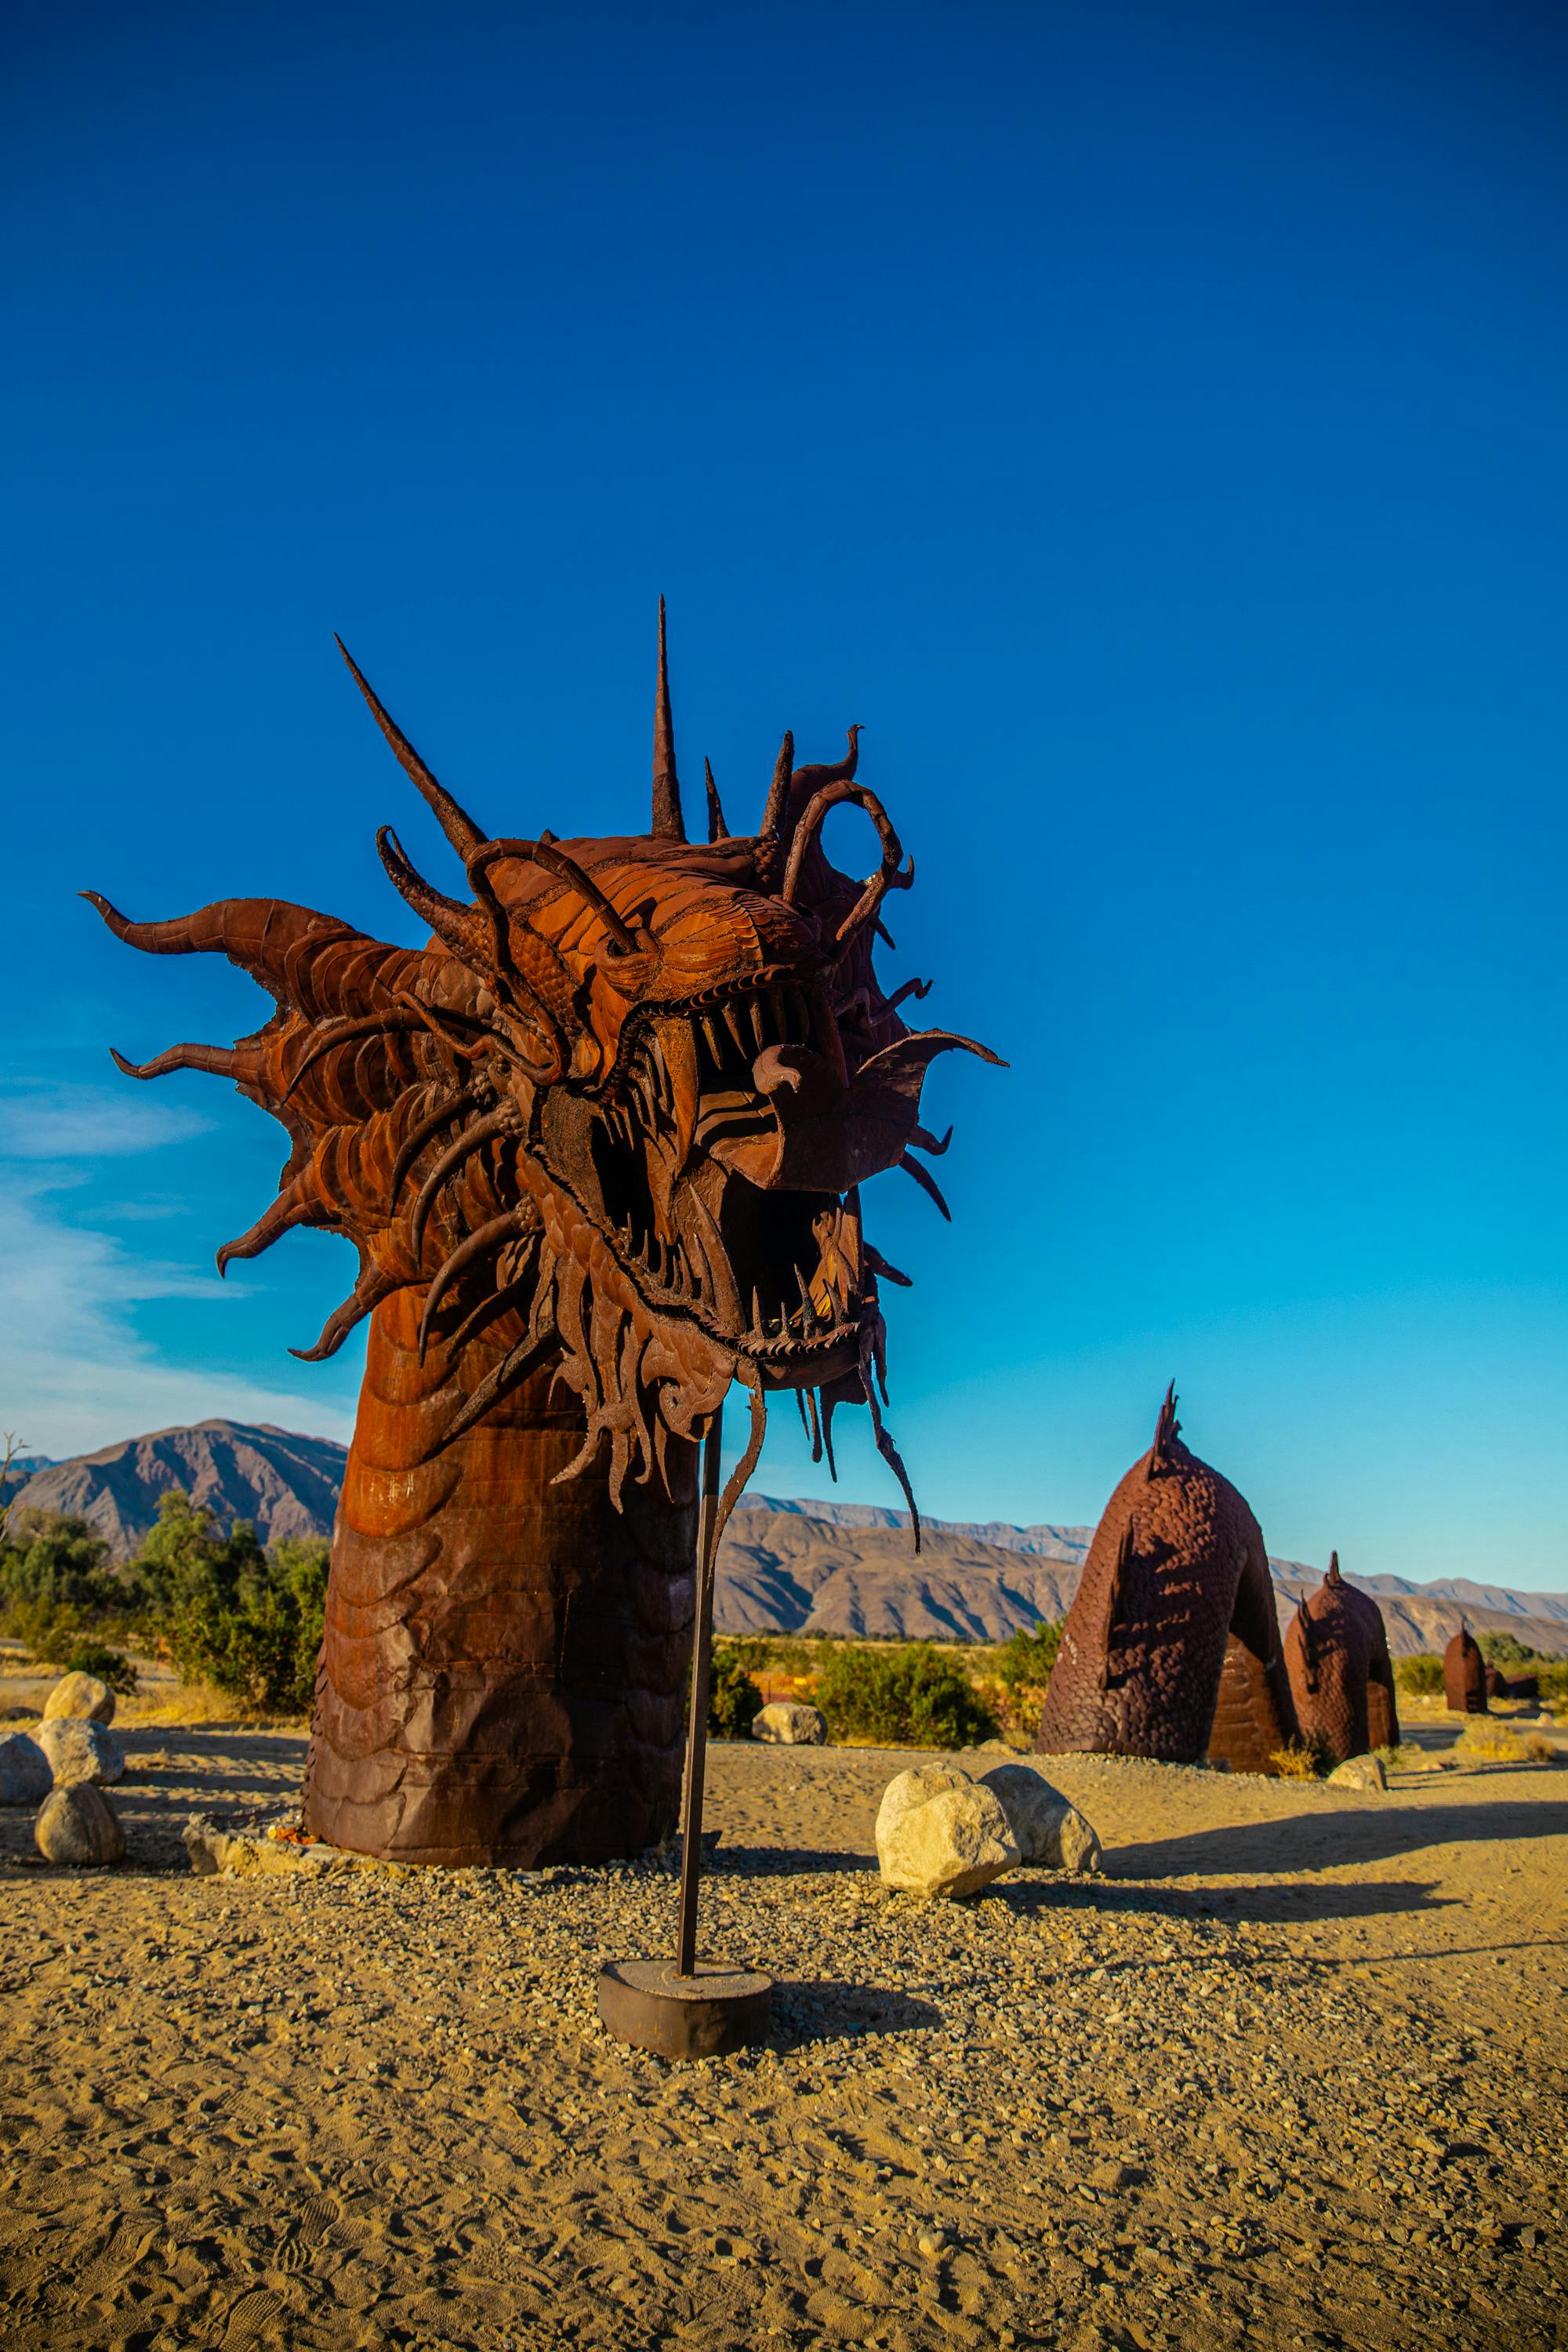 brown metal dragon sculpture in borrego springs california